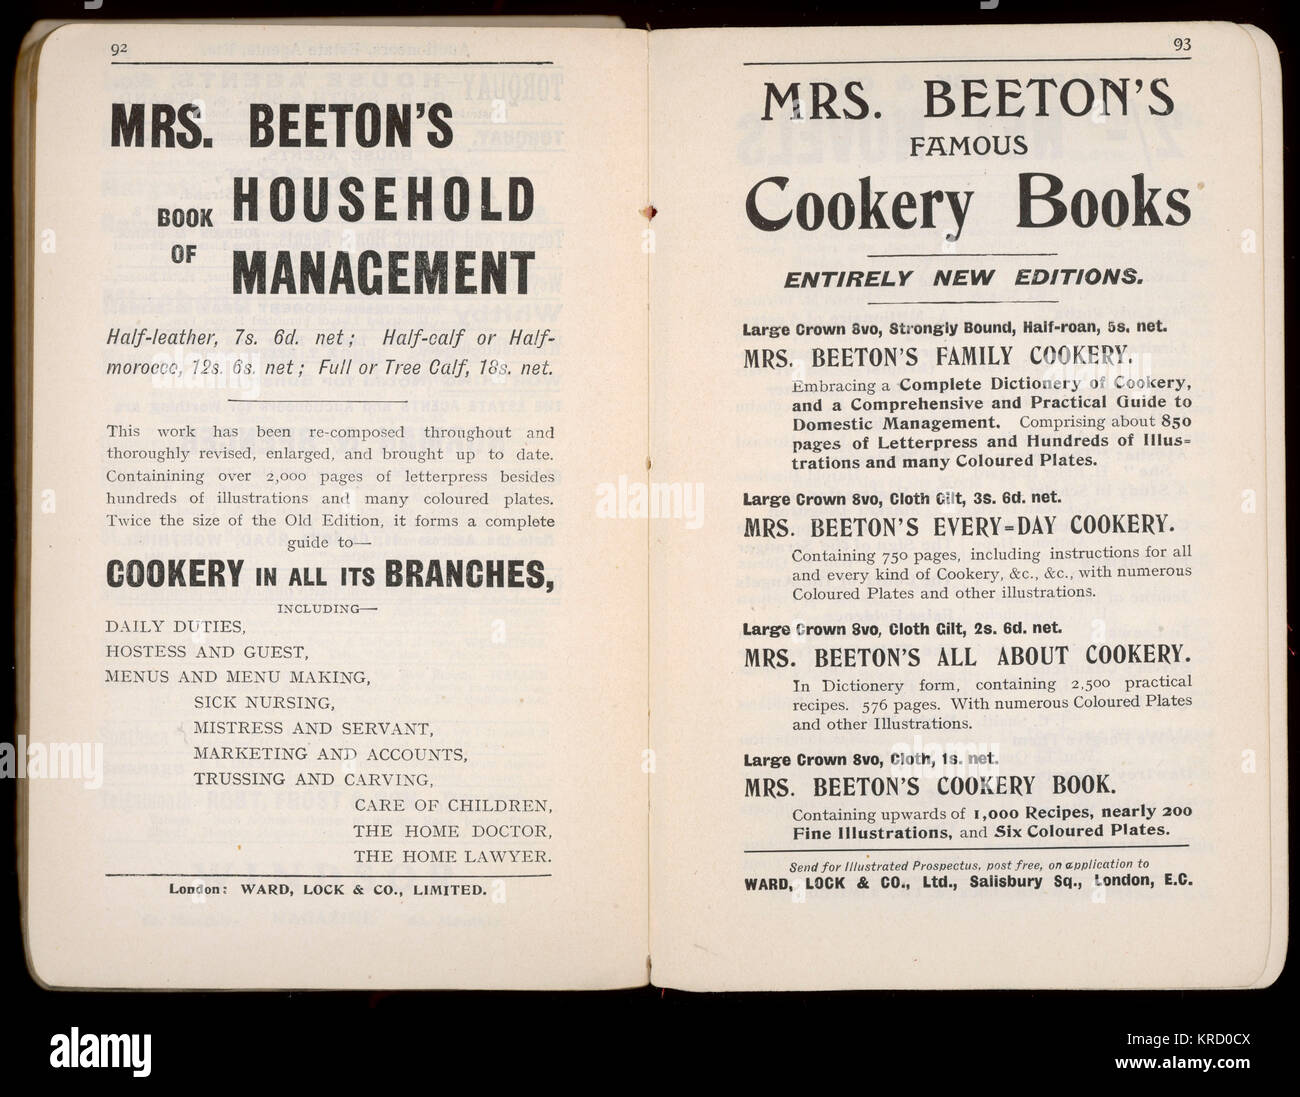 Annunci pubblicitari per il Libro della signora Beeton sulla gestione delle famiglie Foto Stock